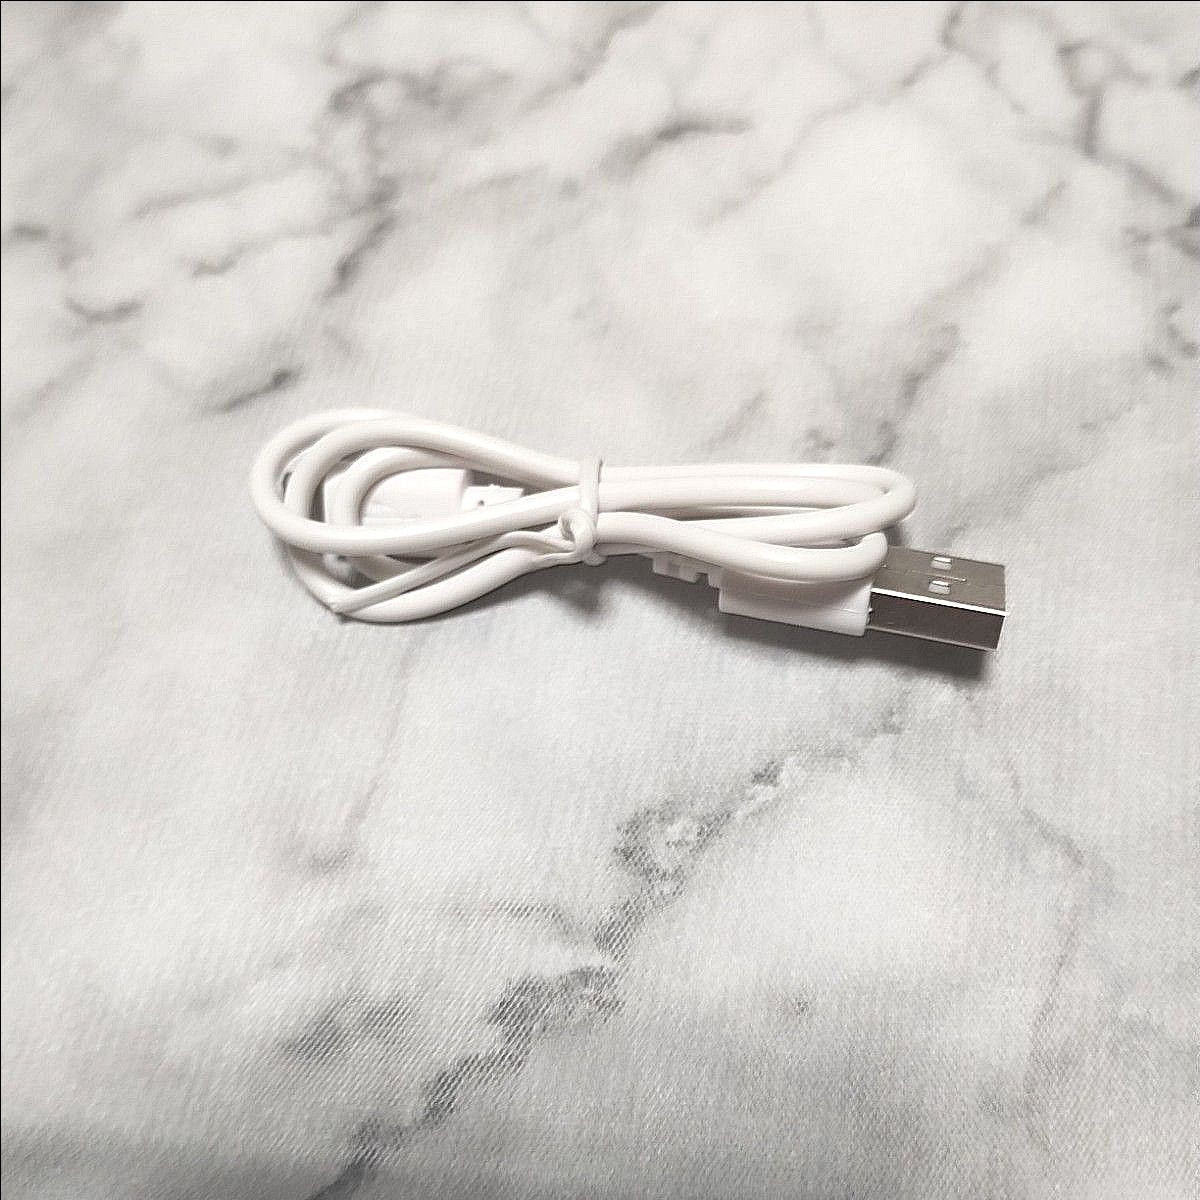 【新品未使用】Micro USBケーブル 45cm ホワイト